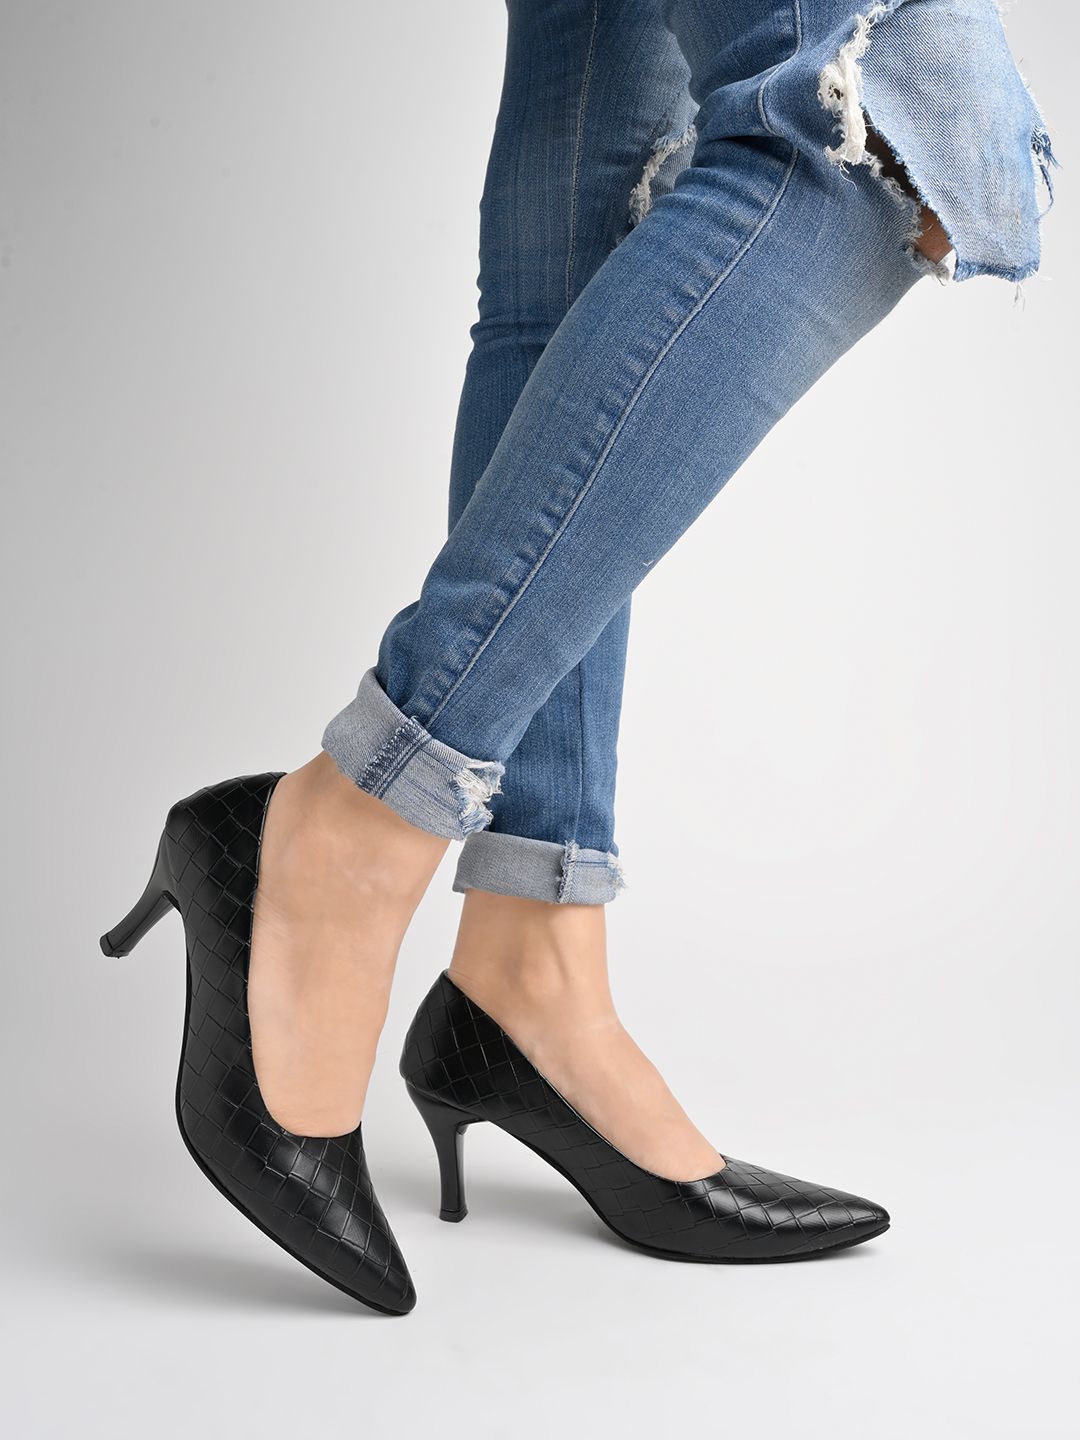     			Shoetopia - Black Women's Pumps Heels